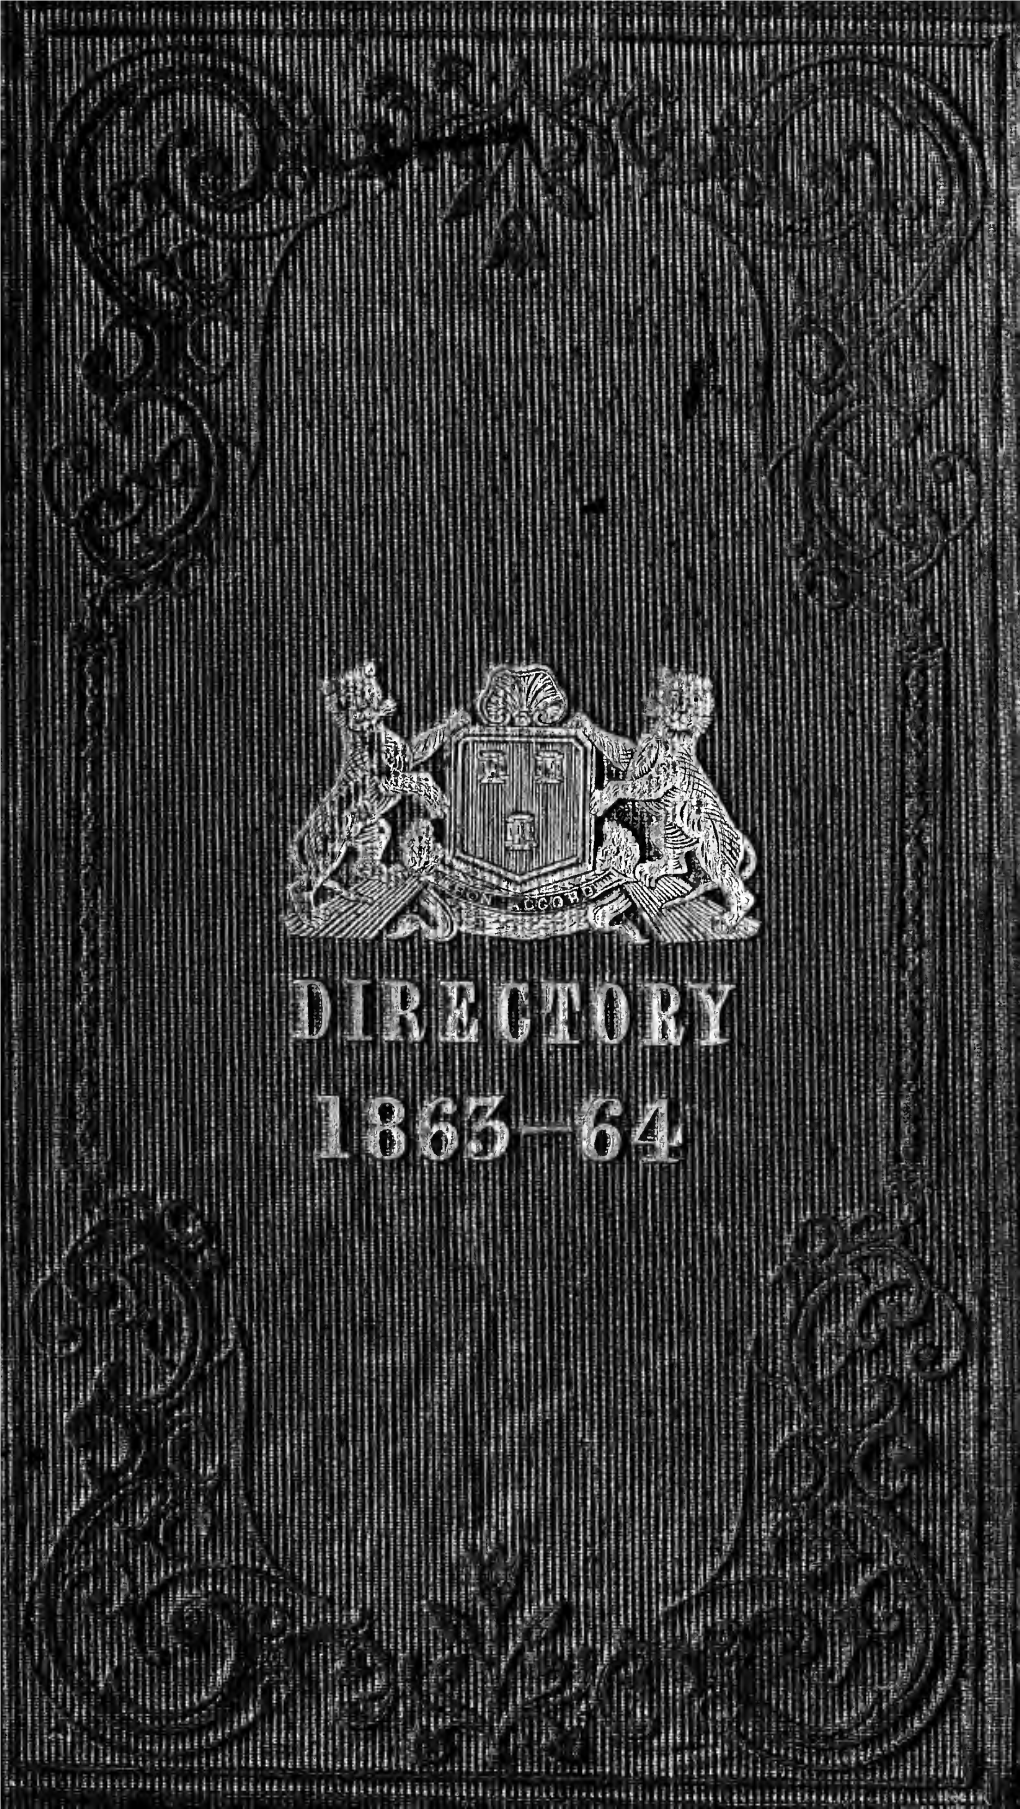 Post Office Aberdeen Directory